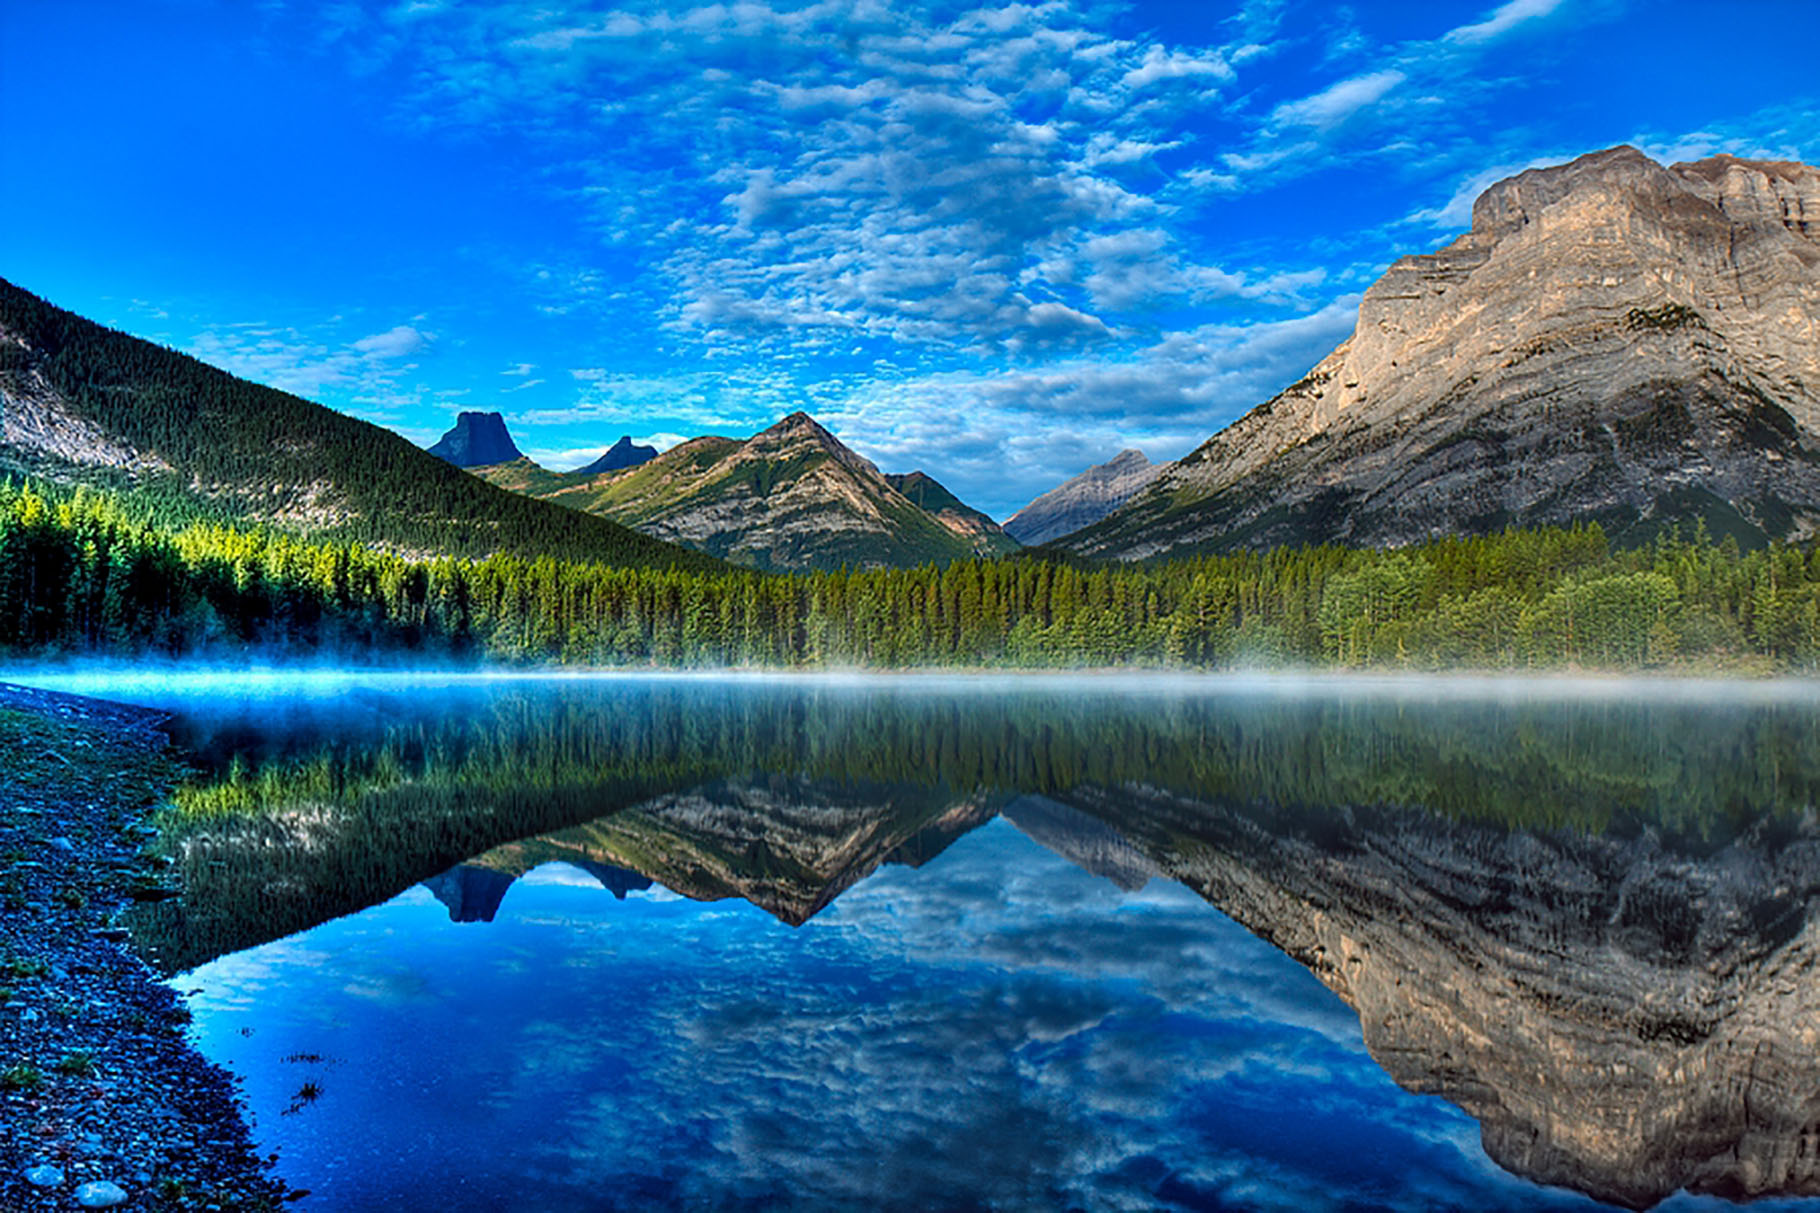 Dans une des provinces canadiennes, l'Alberta, se trouve le pays du Kananaskis. Il s'agit d'un ensemble de parcs principalement destinés au tourisme et aux loisirs, dont l'un est une réserve écologique. Au cœur de ce pays, dont le nom rendrait hommage à un indien d'une des tribus du peuple Cri, s'allonge un lac dénommé Wedge Pond. Littéralement « l'étang du coin ». Un lieu connu pour ses randonnées et autres loisirs d'extérieur, comme le ski de fond ou la luge en hiver.Un sentier de seulement un kilomètre de long, longeant l'étang, explique son histoire grâce à plusieurs pancartes. La première titille la curiosité. Elle raconte que Wedge Pond ne disposait que d'un mètre de profondeur quelques années auparavant mais que cette époque est désormais révolue. Cette faible taille, le laissant geler entièrement l'hiver, et parfois s'assécher en été, ce qui rendait la survie des poissons impossible ne serait plus un problème aujourd'hui. Pourquoi ? La réponse se trouve au Canada !© 2009, Alan et Elaine Wilson